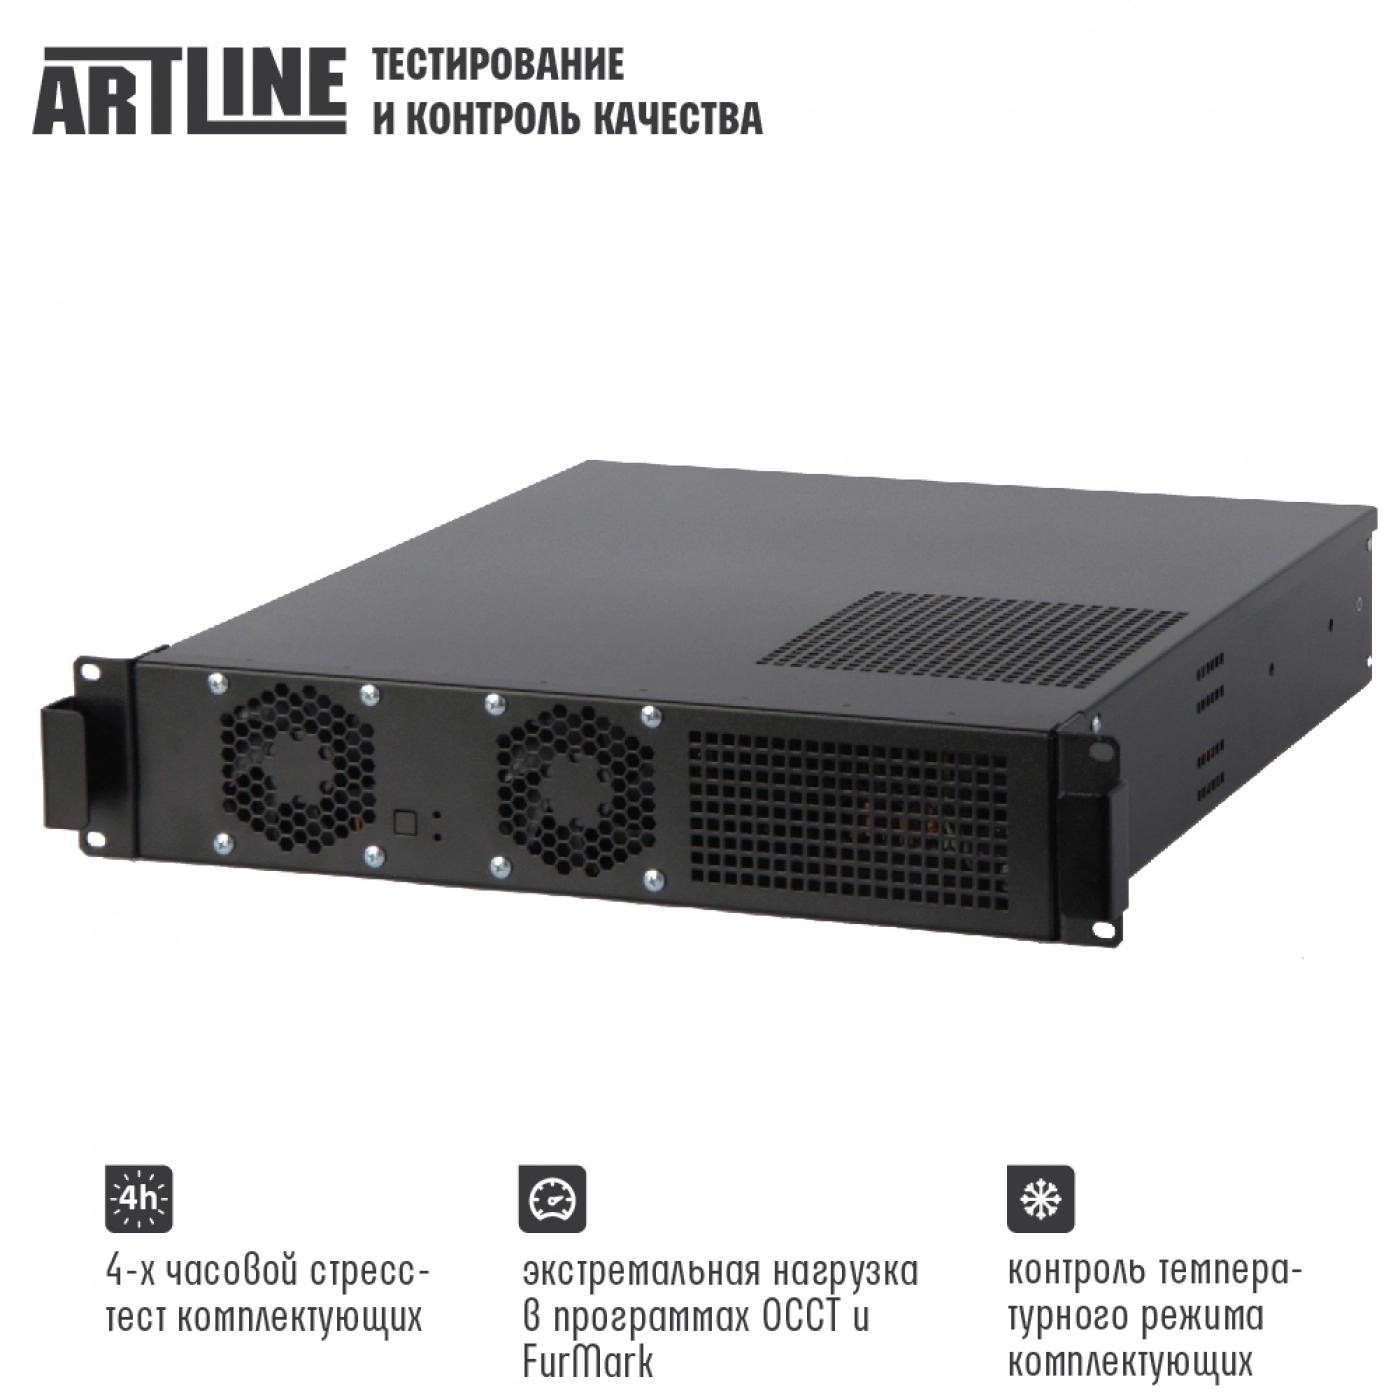 Купить Сервер ARTLINE Business R15v08 - фото 4